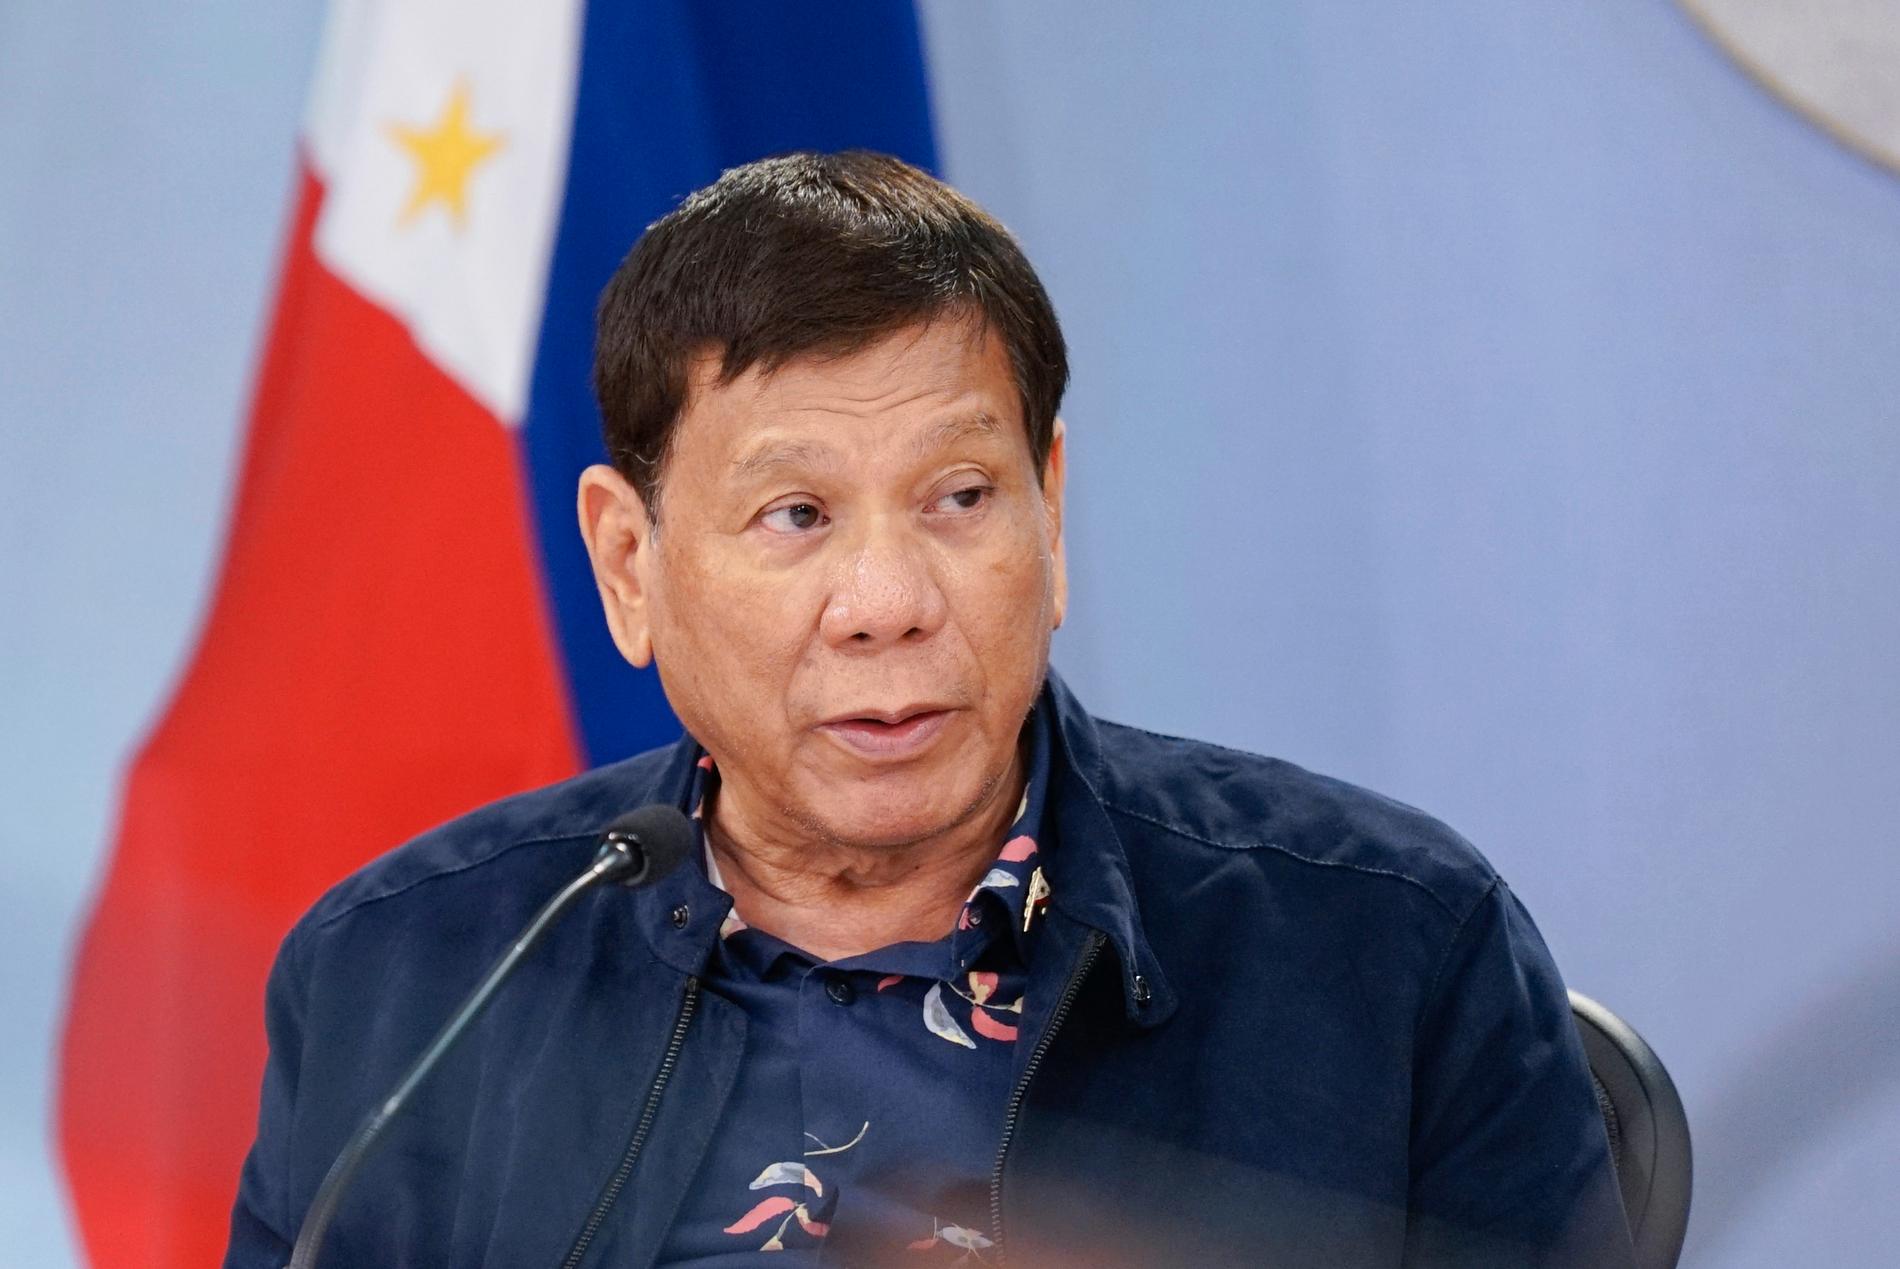 Rodrigo Duterte vann presidentvalet i Filippinerna i maj 2016 efter att som borgmästare i Davao ha gjort sig känd för sina hårdföra metoder mot brott och knark.